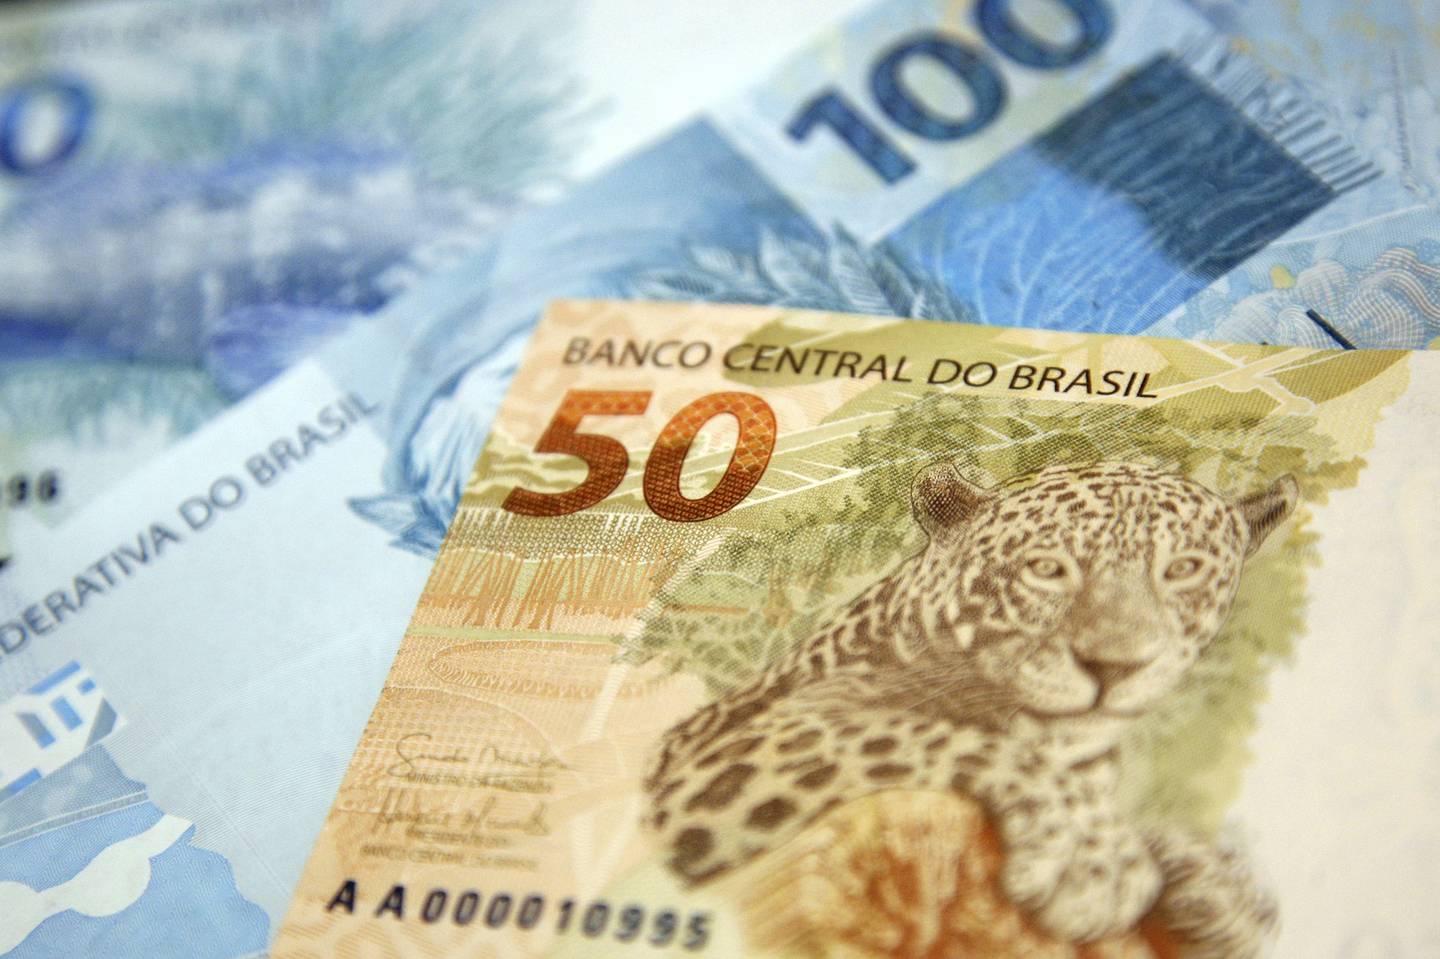 “Você não pode ficar contando com o banco central, porque ele te deixa na mão”, disse Bernardo Meres, sócio da SPX Capital, que administra o fundo Nimitz